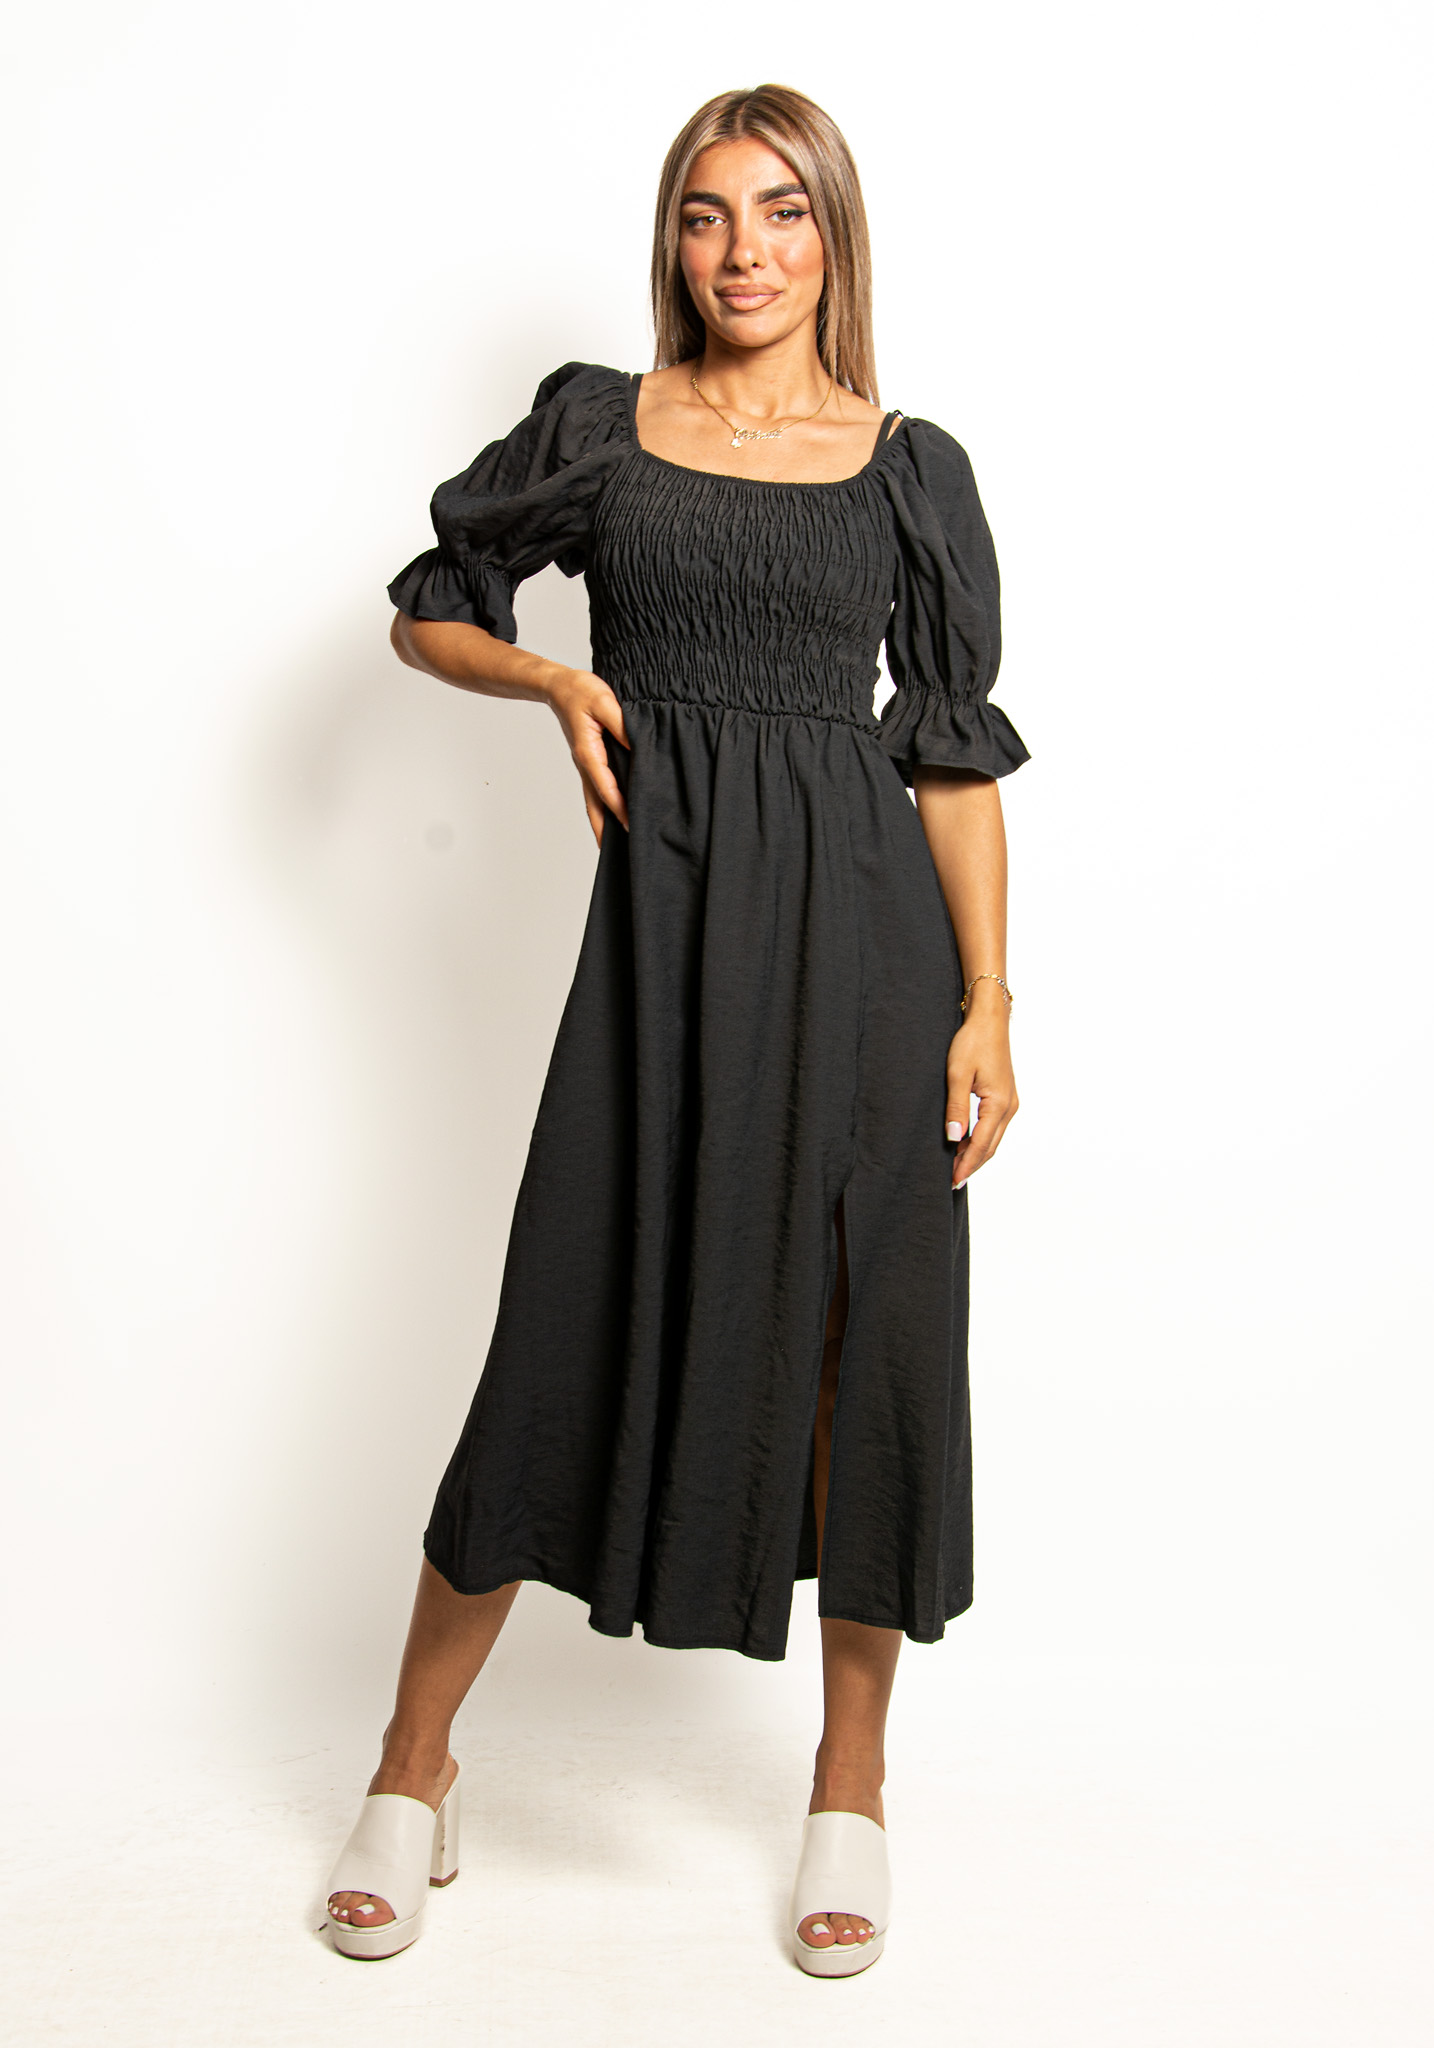 Φόρεμα Σφηκοφωλιά με Φουσκωτά Μανίκια Mαύρο – EllenBoutique